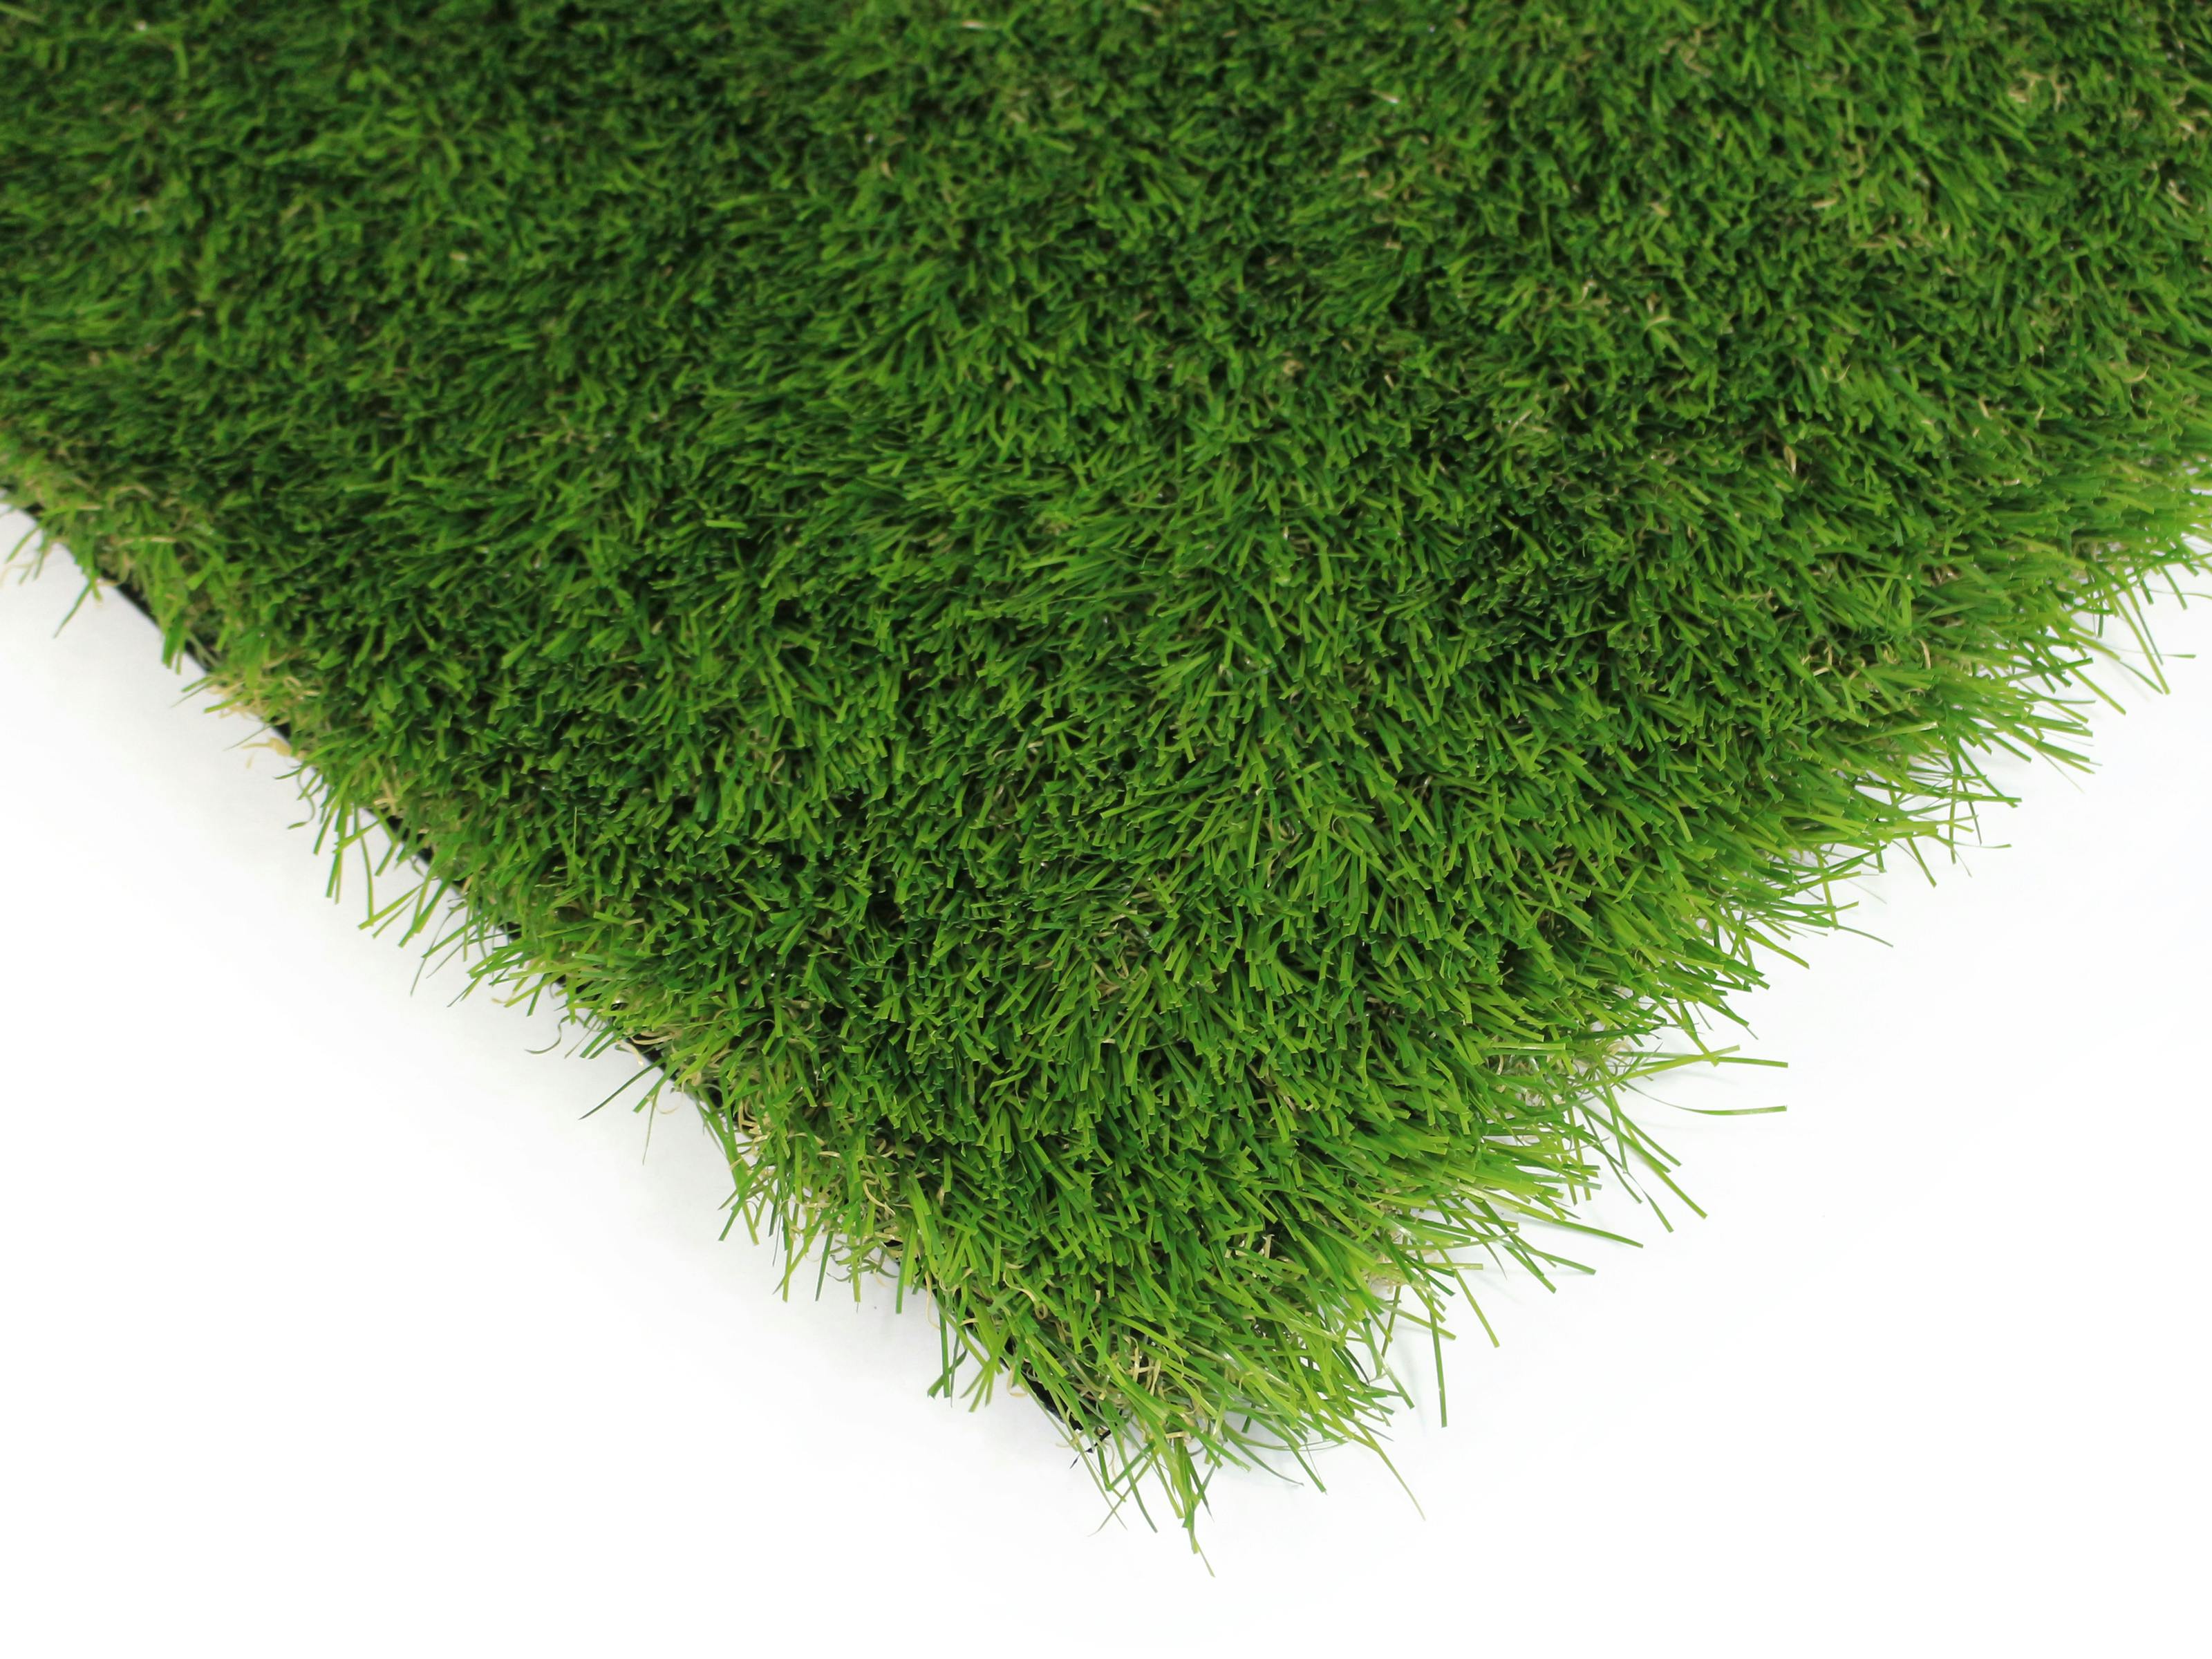 Artificial Grass Auckland